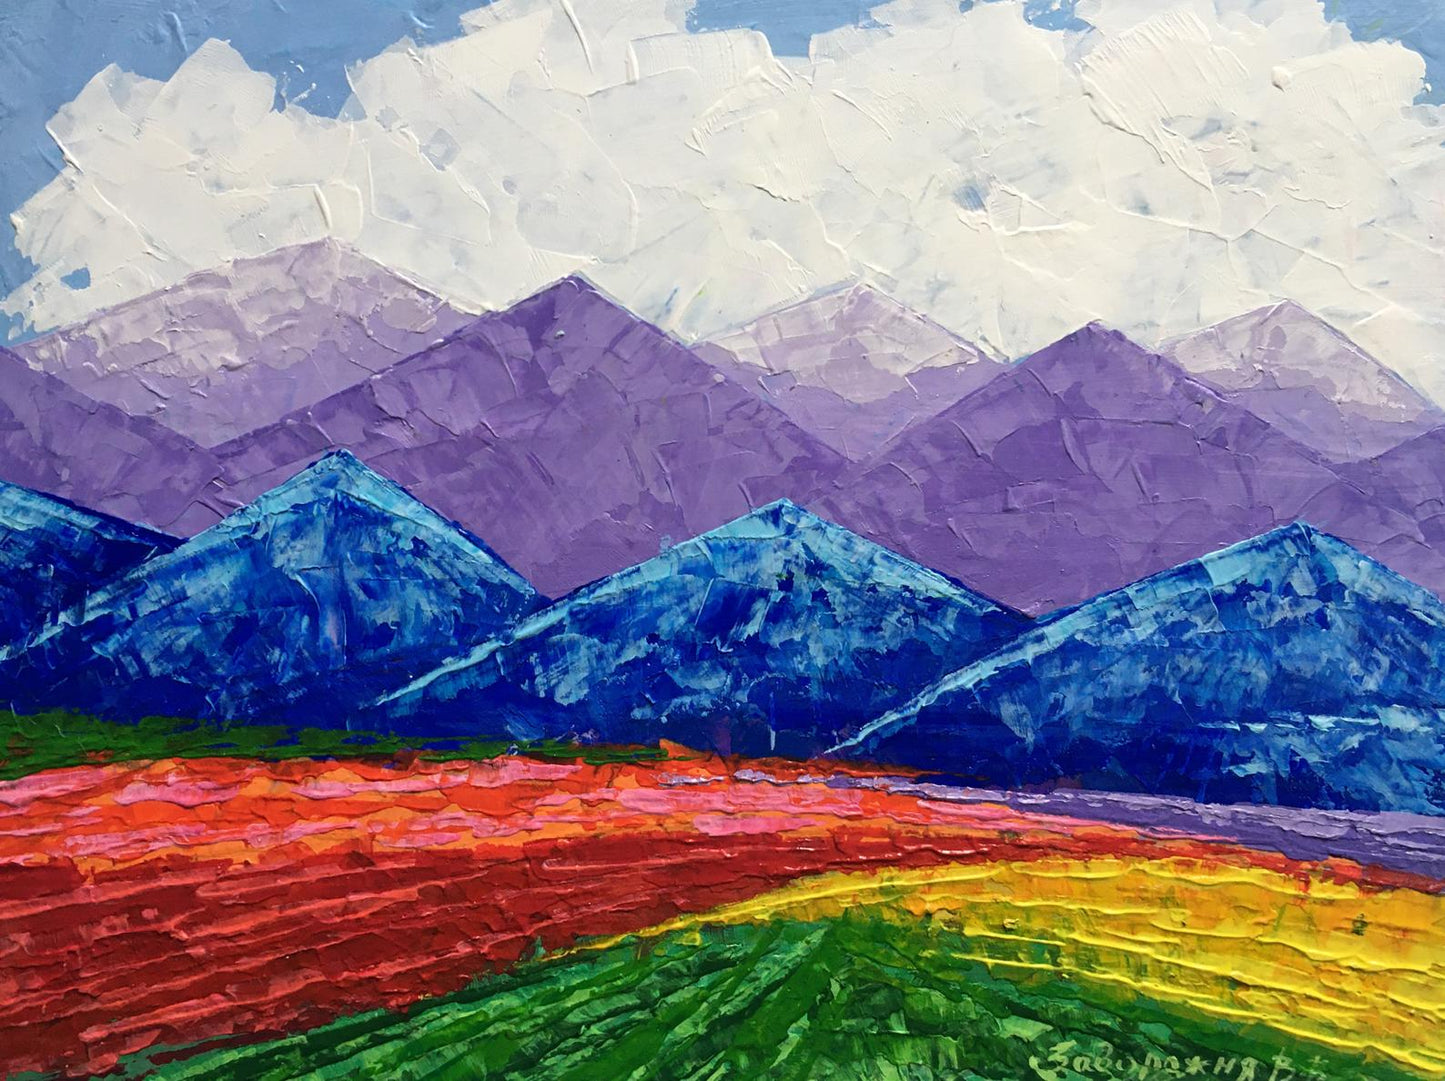 Oil painting Massive Mountain View V. Zadorozhnya